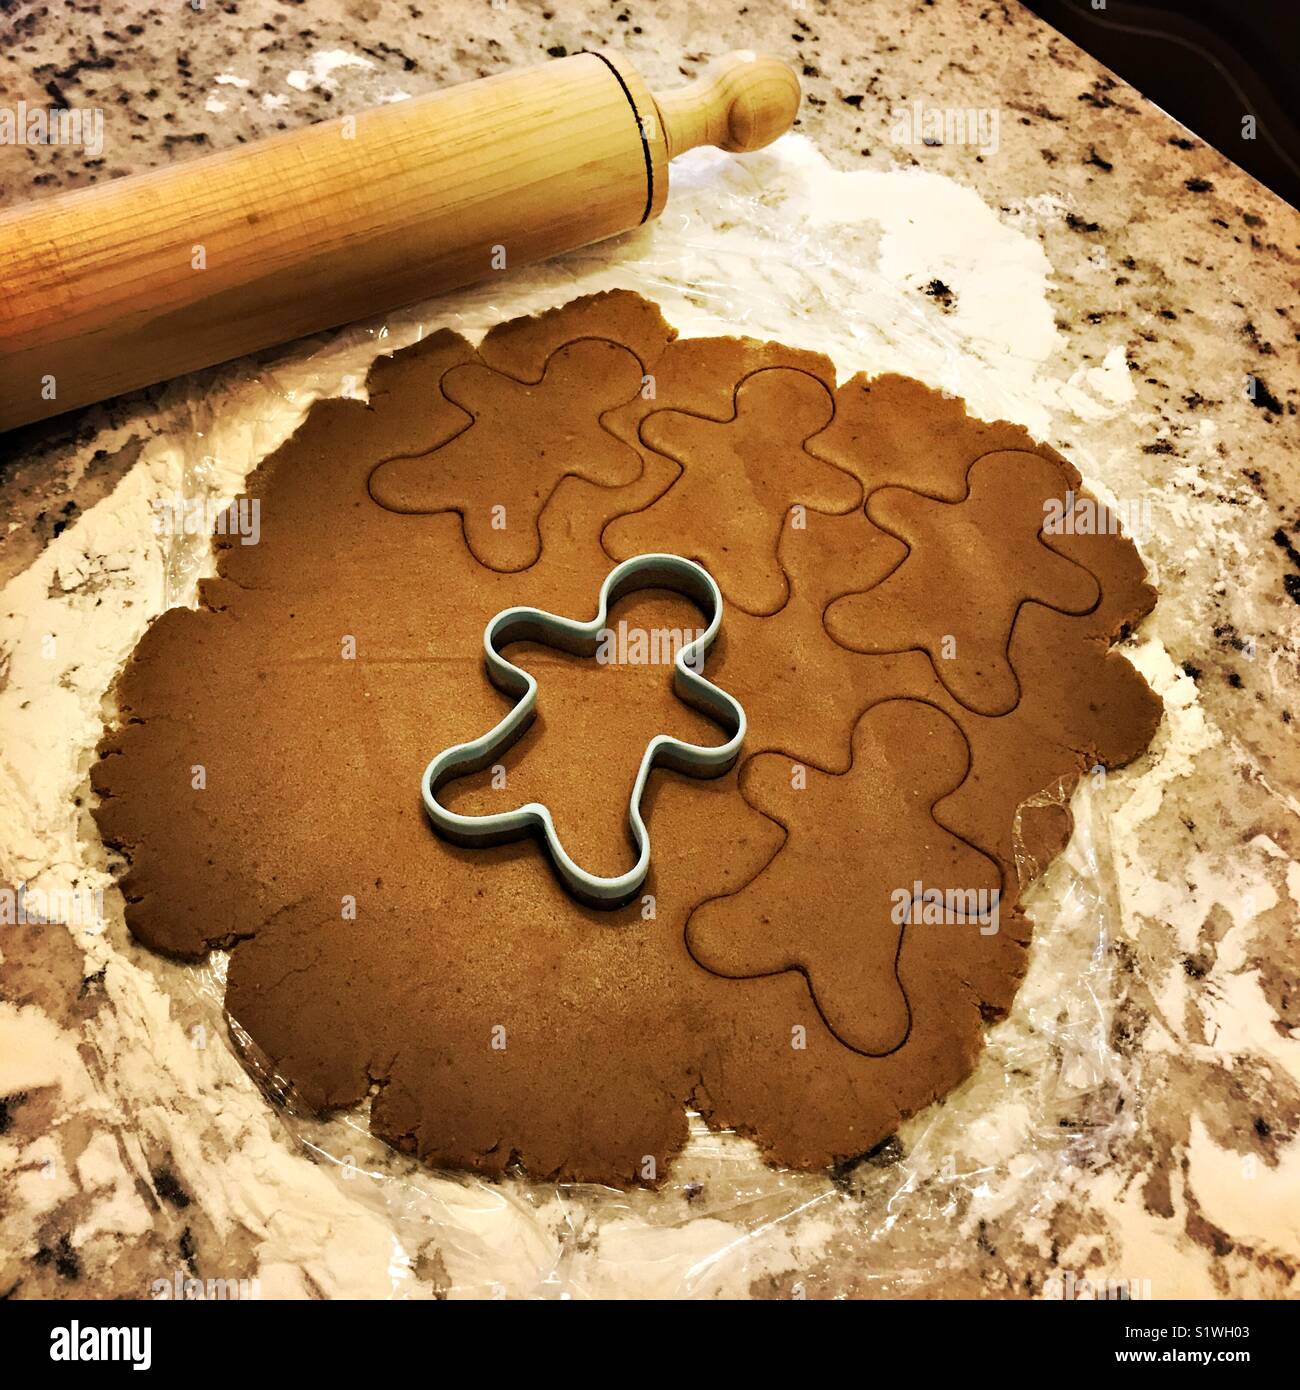 Gingerbread cookie dough est déployée sur un plan de travail en marbre avec un emporte-pièce d'épices dans la pâte et un rouleau à côté de la pâte. Banque D'Images